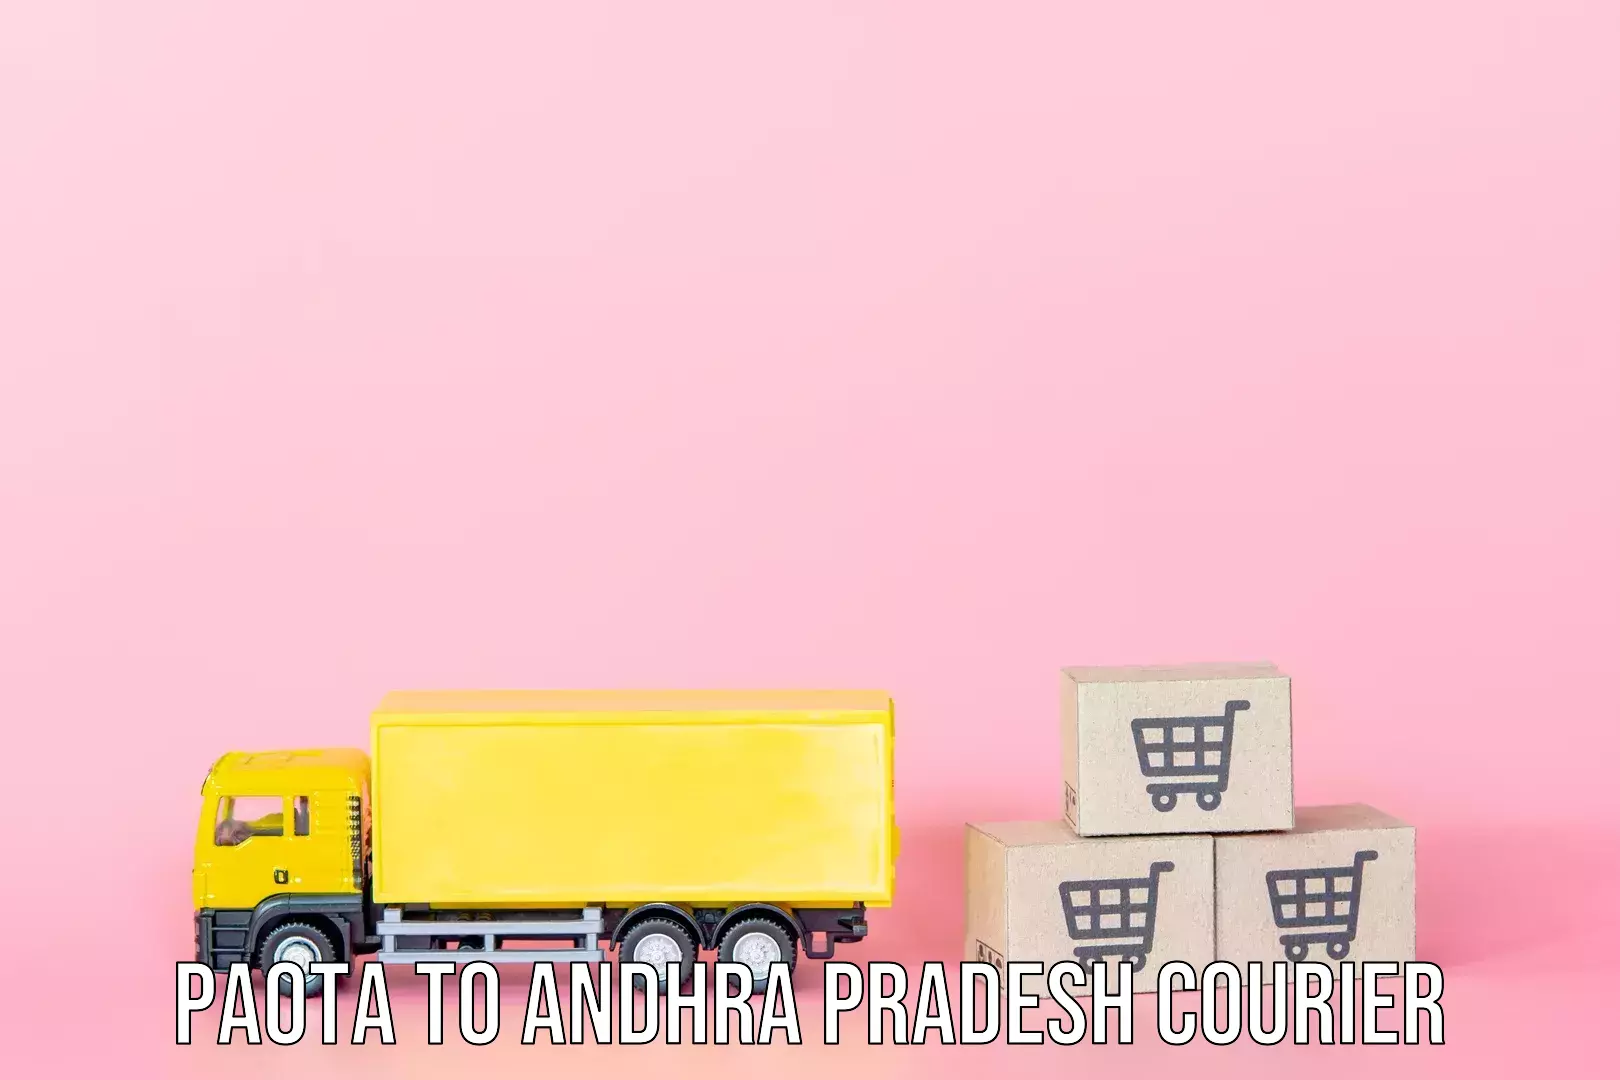 Luggage shipping management Paota to Tirupati